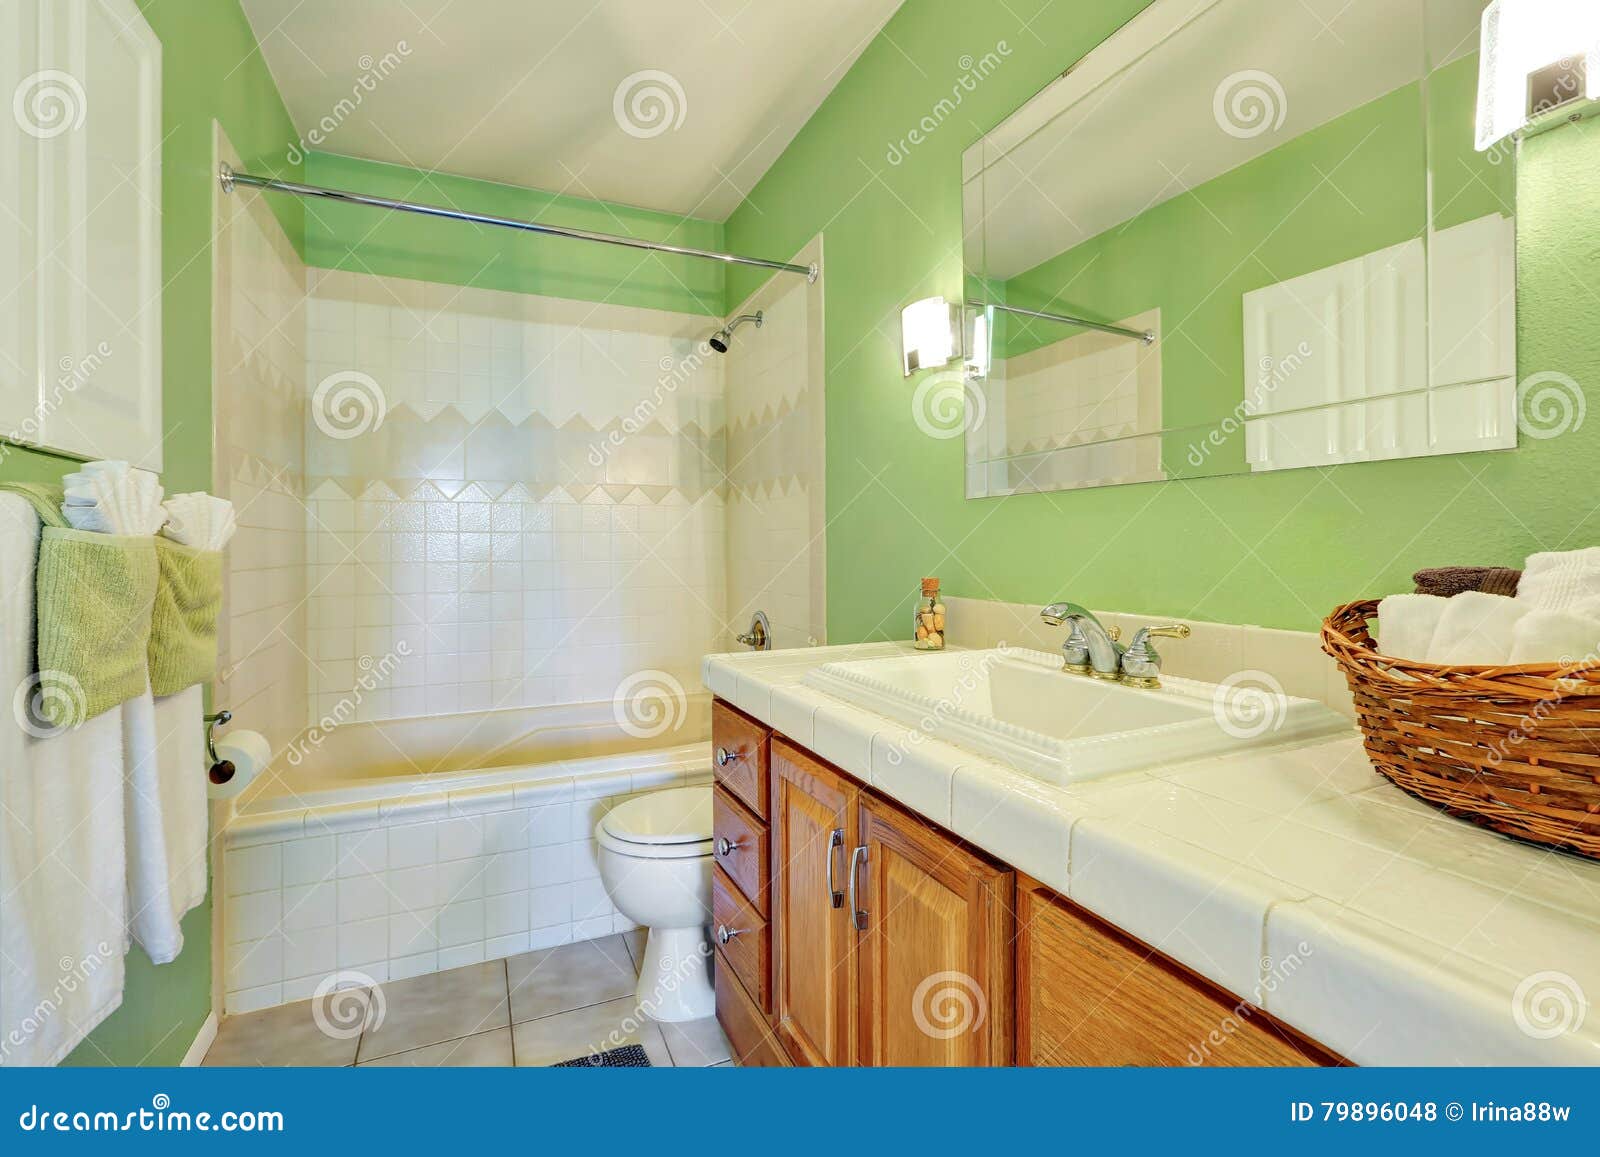 салатовая ванна фото в интерьере